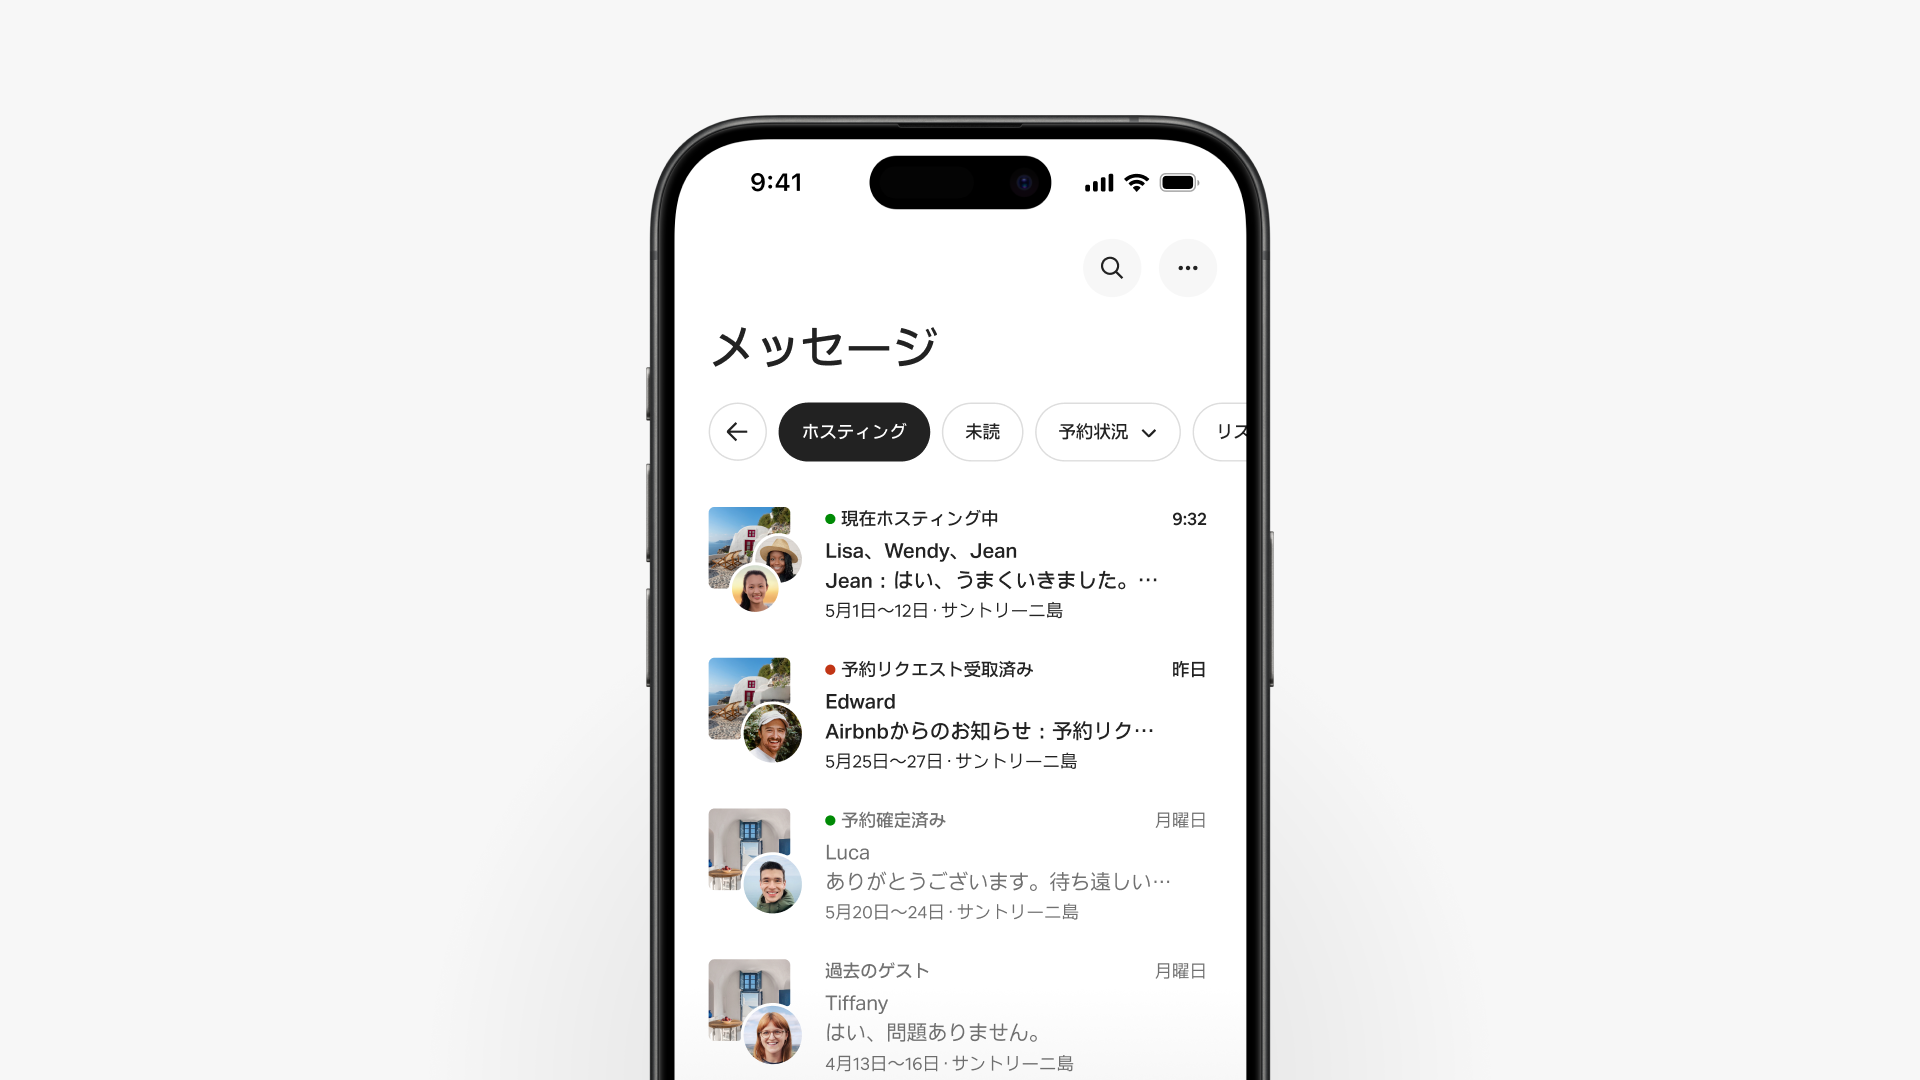 エアビーアンドビーアプリの画面があり、そこには「メッセージ」タブで「ホスティング」ボタンを選択して、種類別にメッセージを絞り込む様子が示されています。